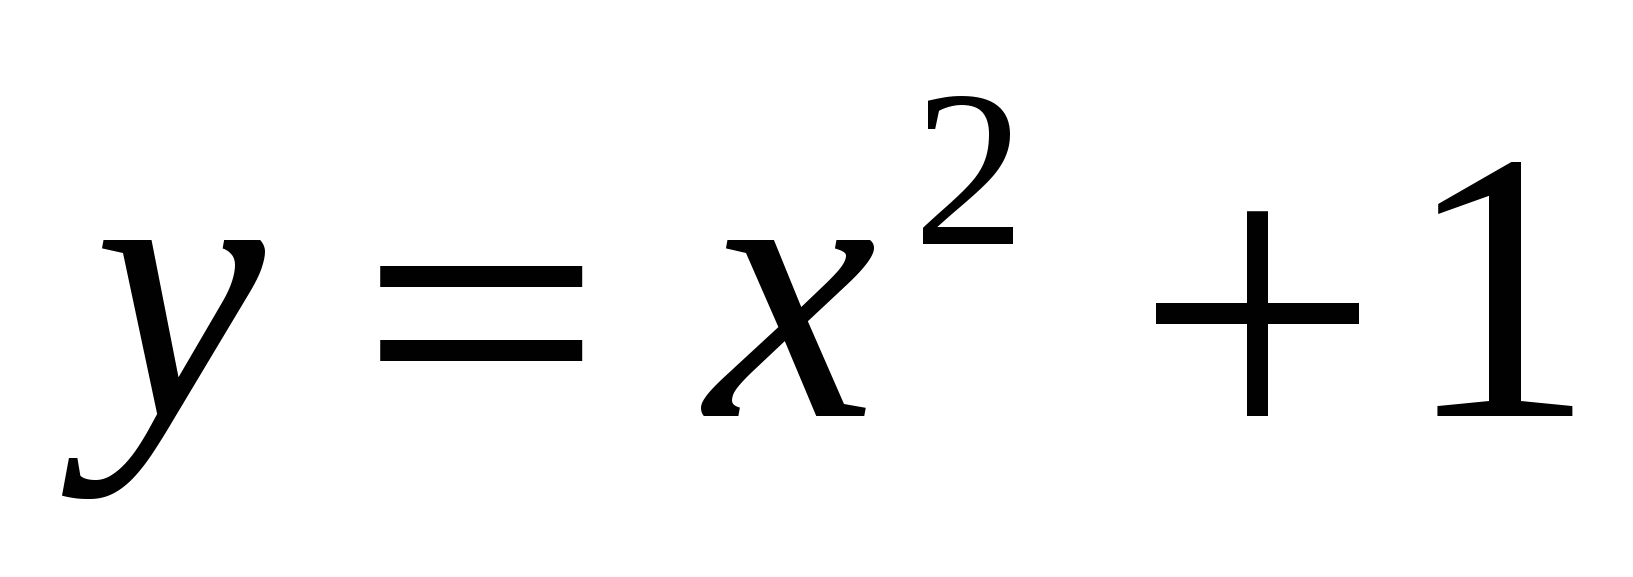 Разработка урока по математике тема: Дифференциальные уравнения ( 1 курс )